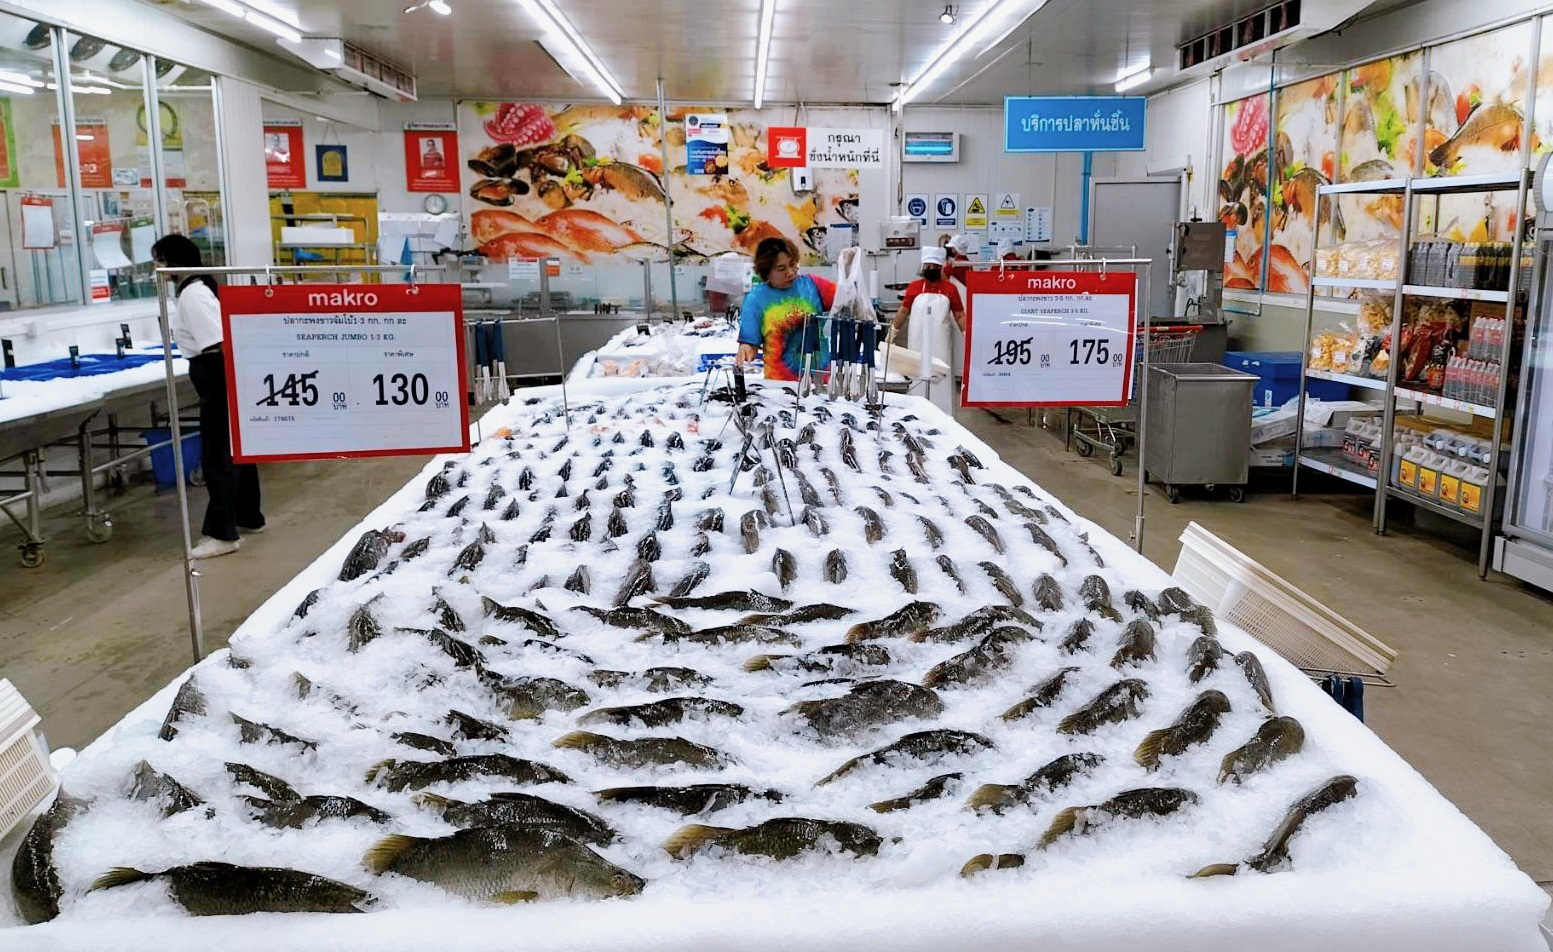 แม็คโครเคียงข้างเกษตรกรไทย จับมือพาณิชย์และประมงจังหวัดสงขลา  รับซื้อปลากะพงกว่า 30,000 กิโลกรัมจากภาคใต้ แก้ปัญหาราคาตกต่ำ